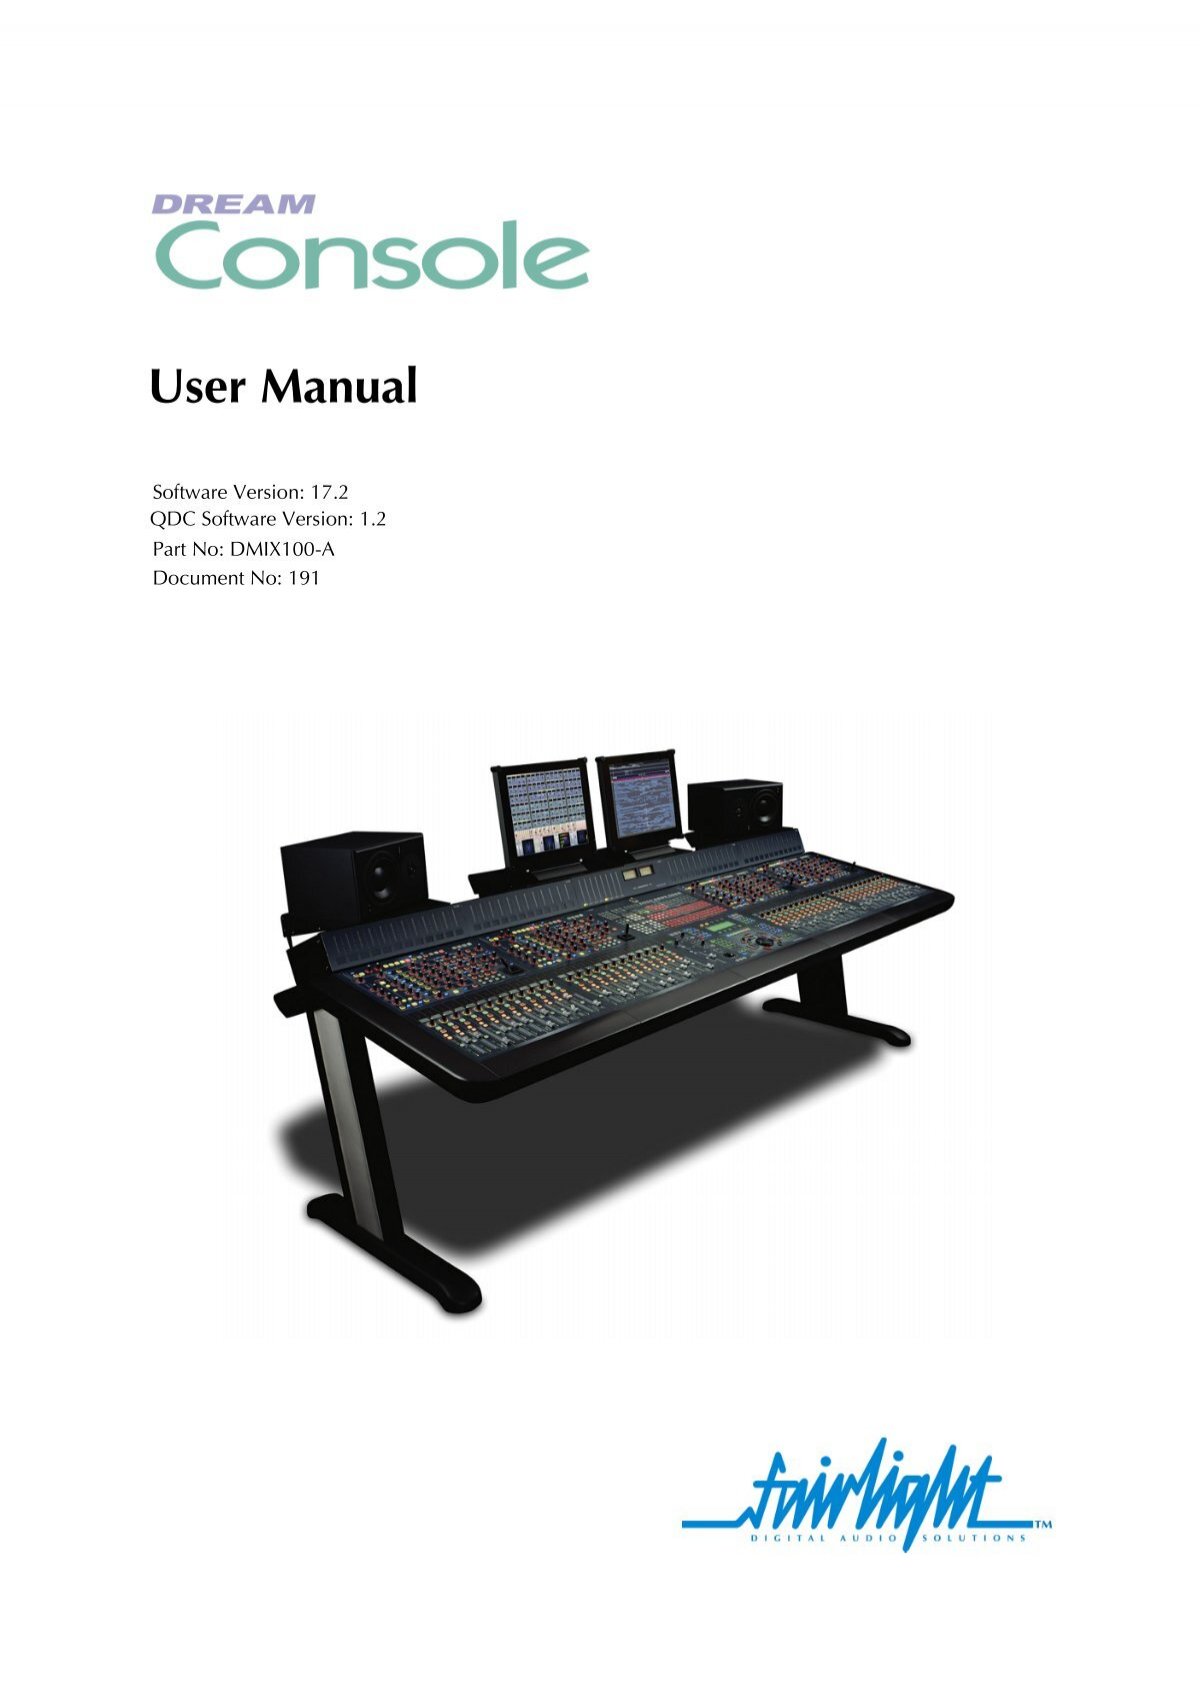 DREAM Console User Manual.pdf - FairlightUS